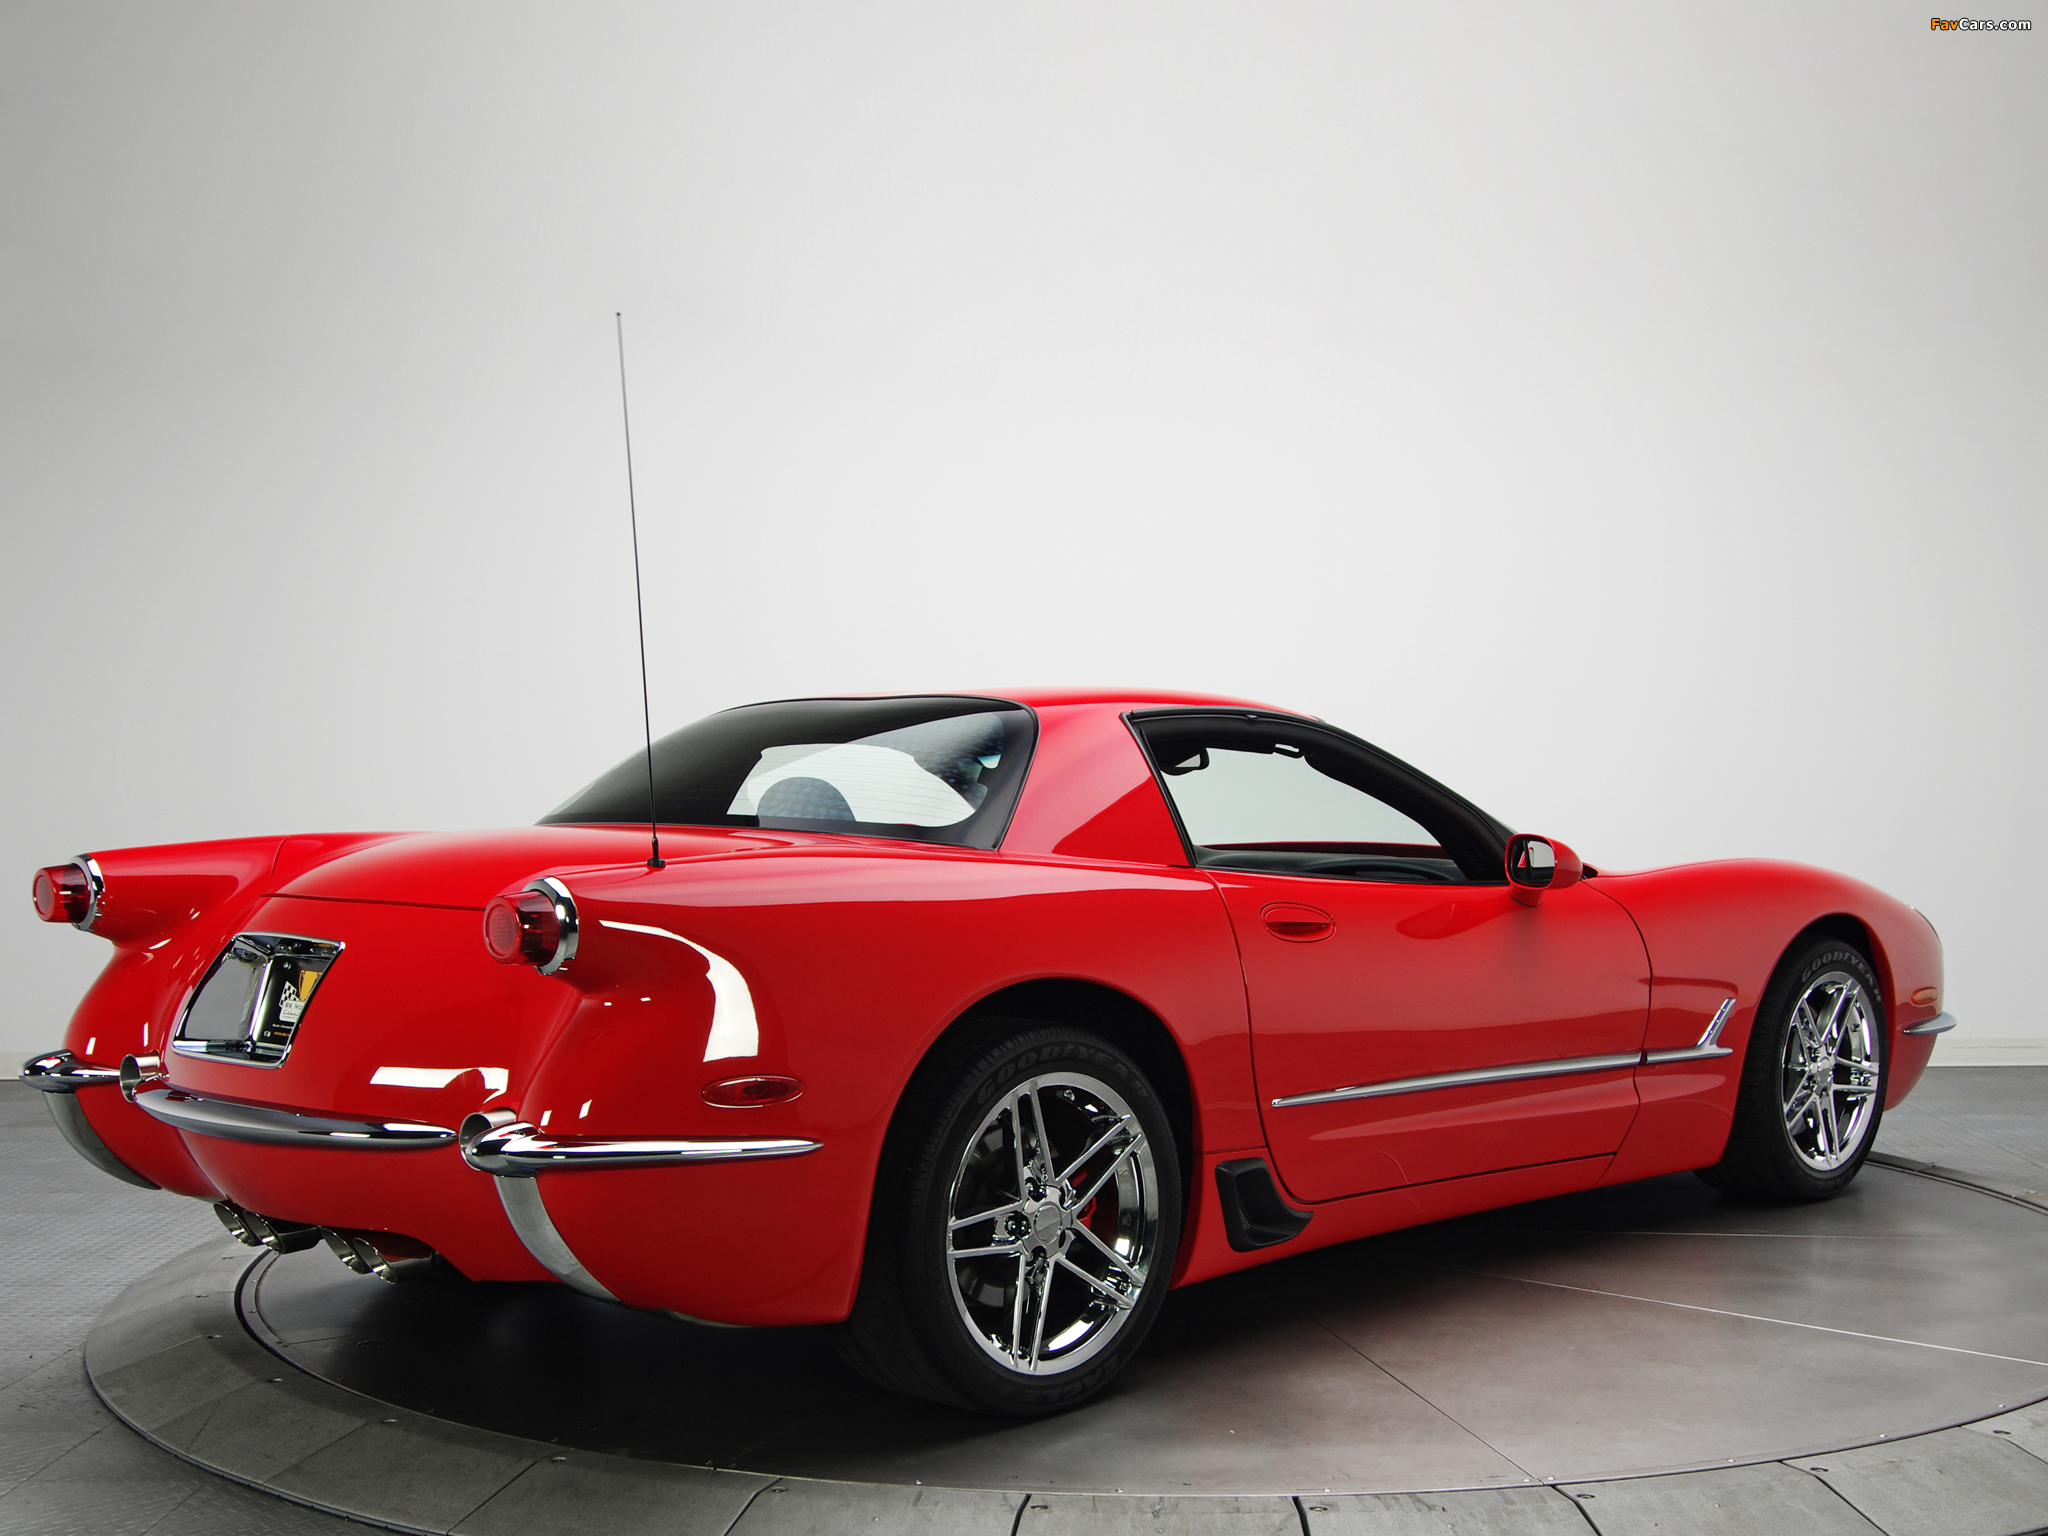 Corvette Z06 1953 Commemorative Edition (C5) 2001 pictures (2048 x 1536)